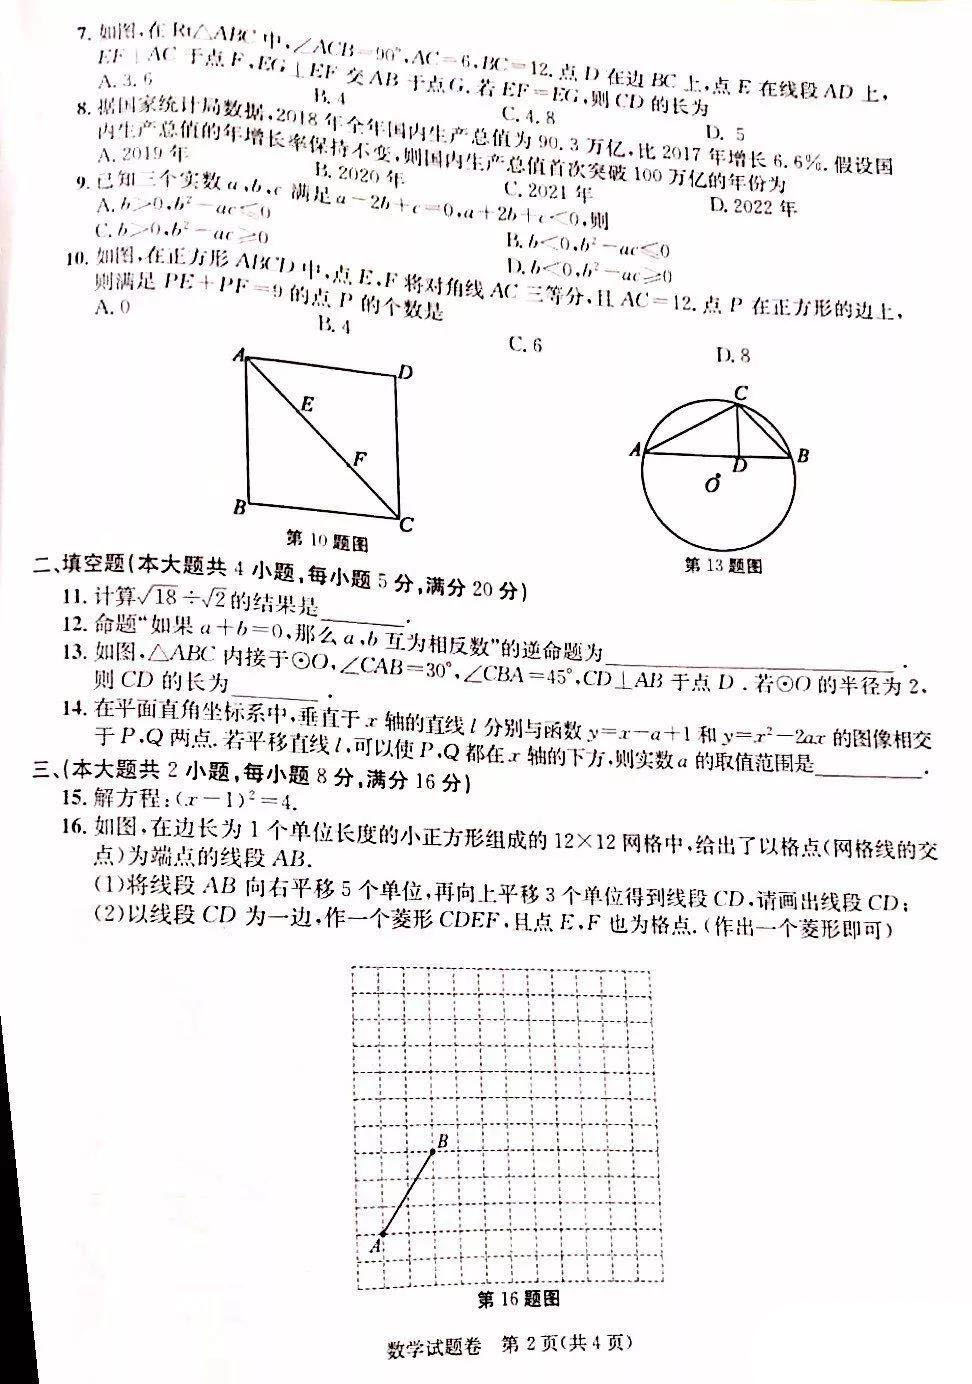 2019年安徽蚌埠中考数学真题及答案【图片版】2.jpg